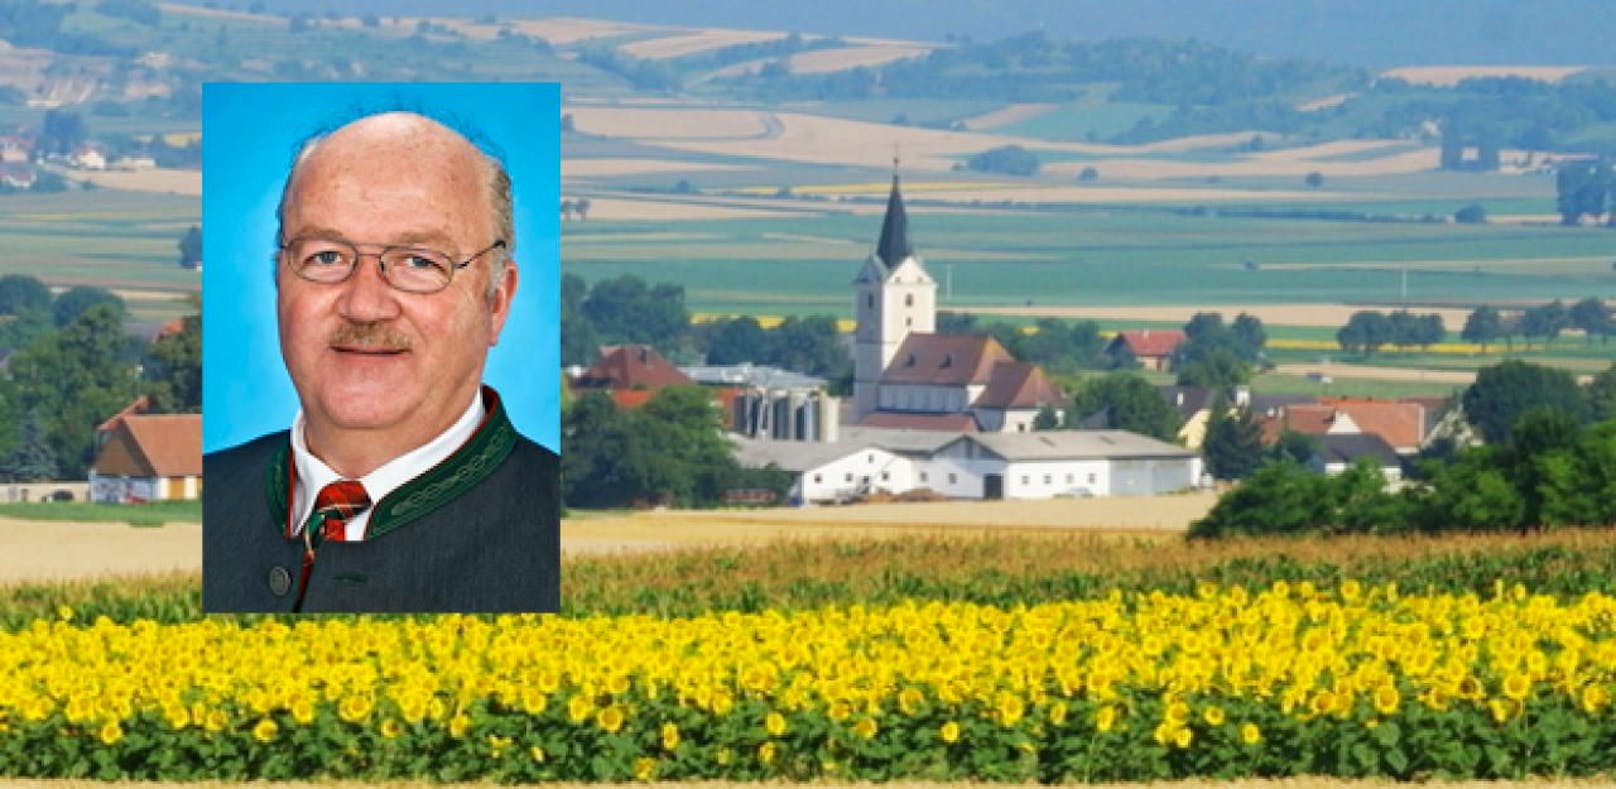 Bürgermeister von Obritzberg tritt zurück